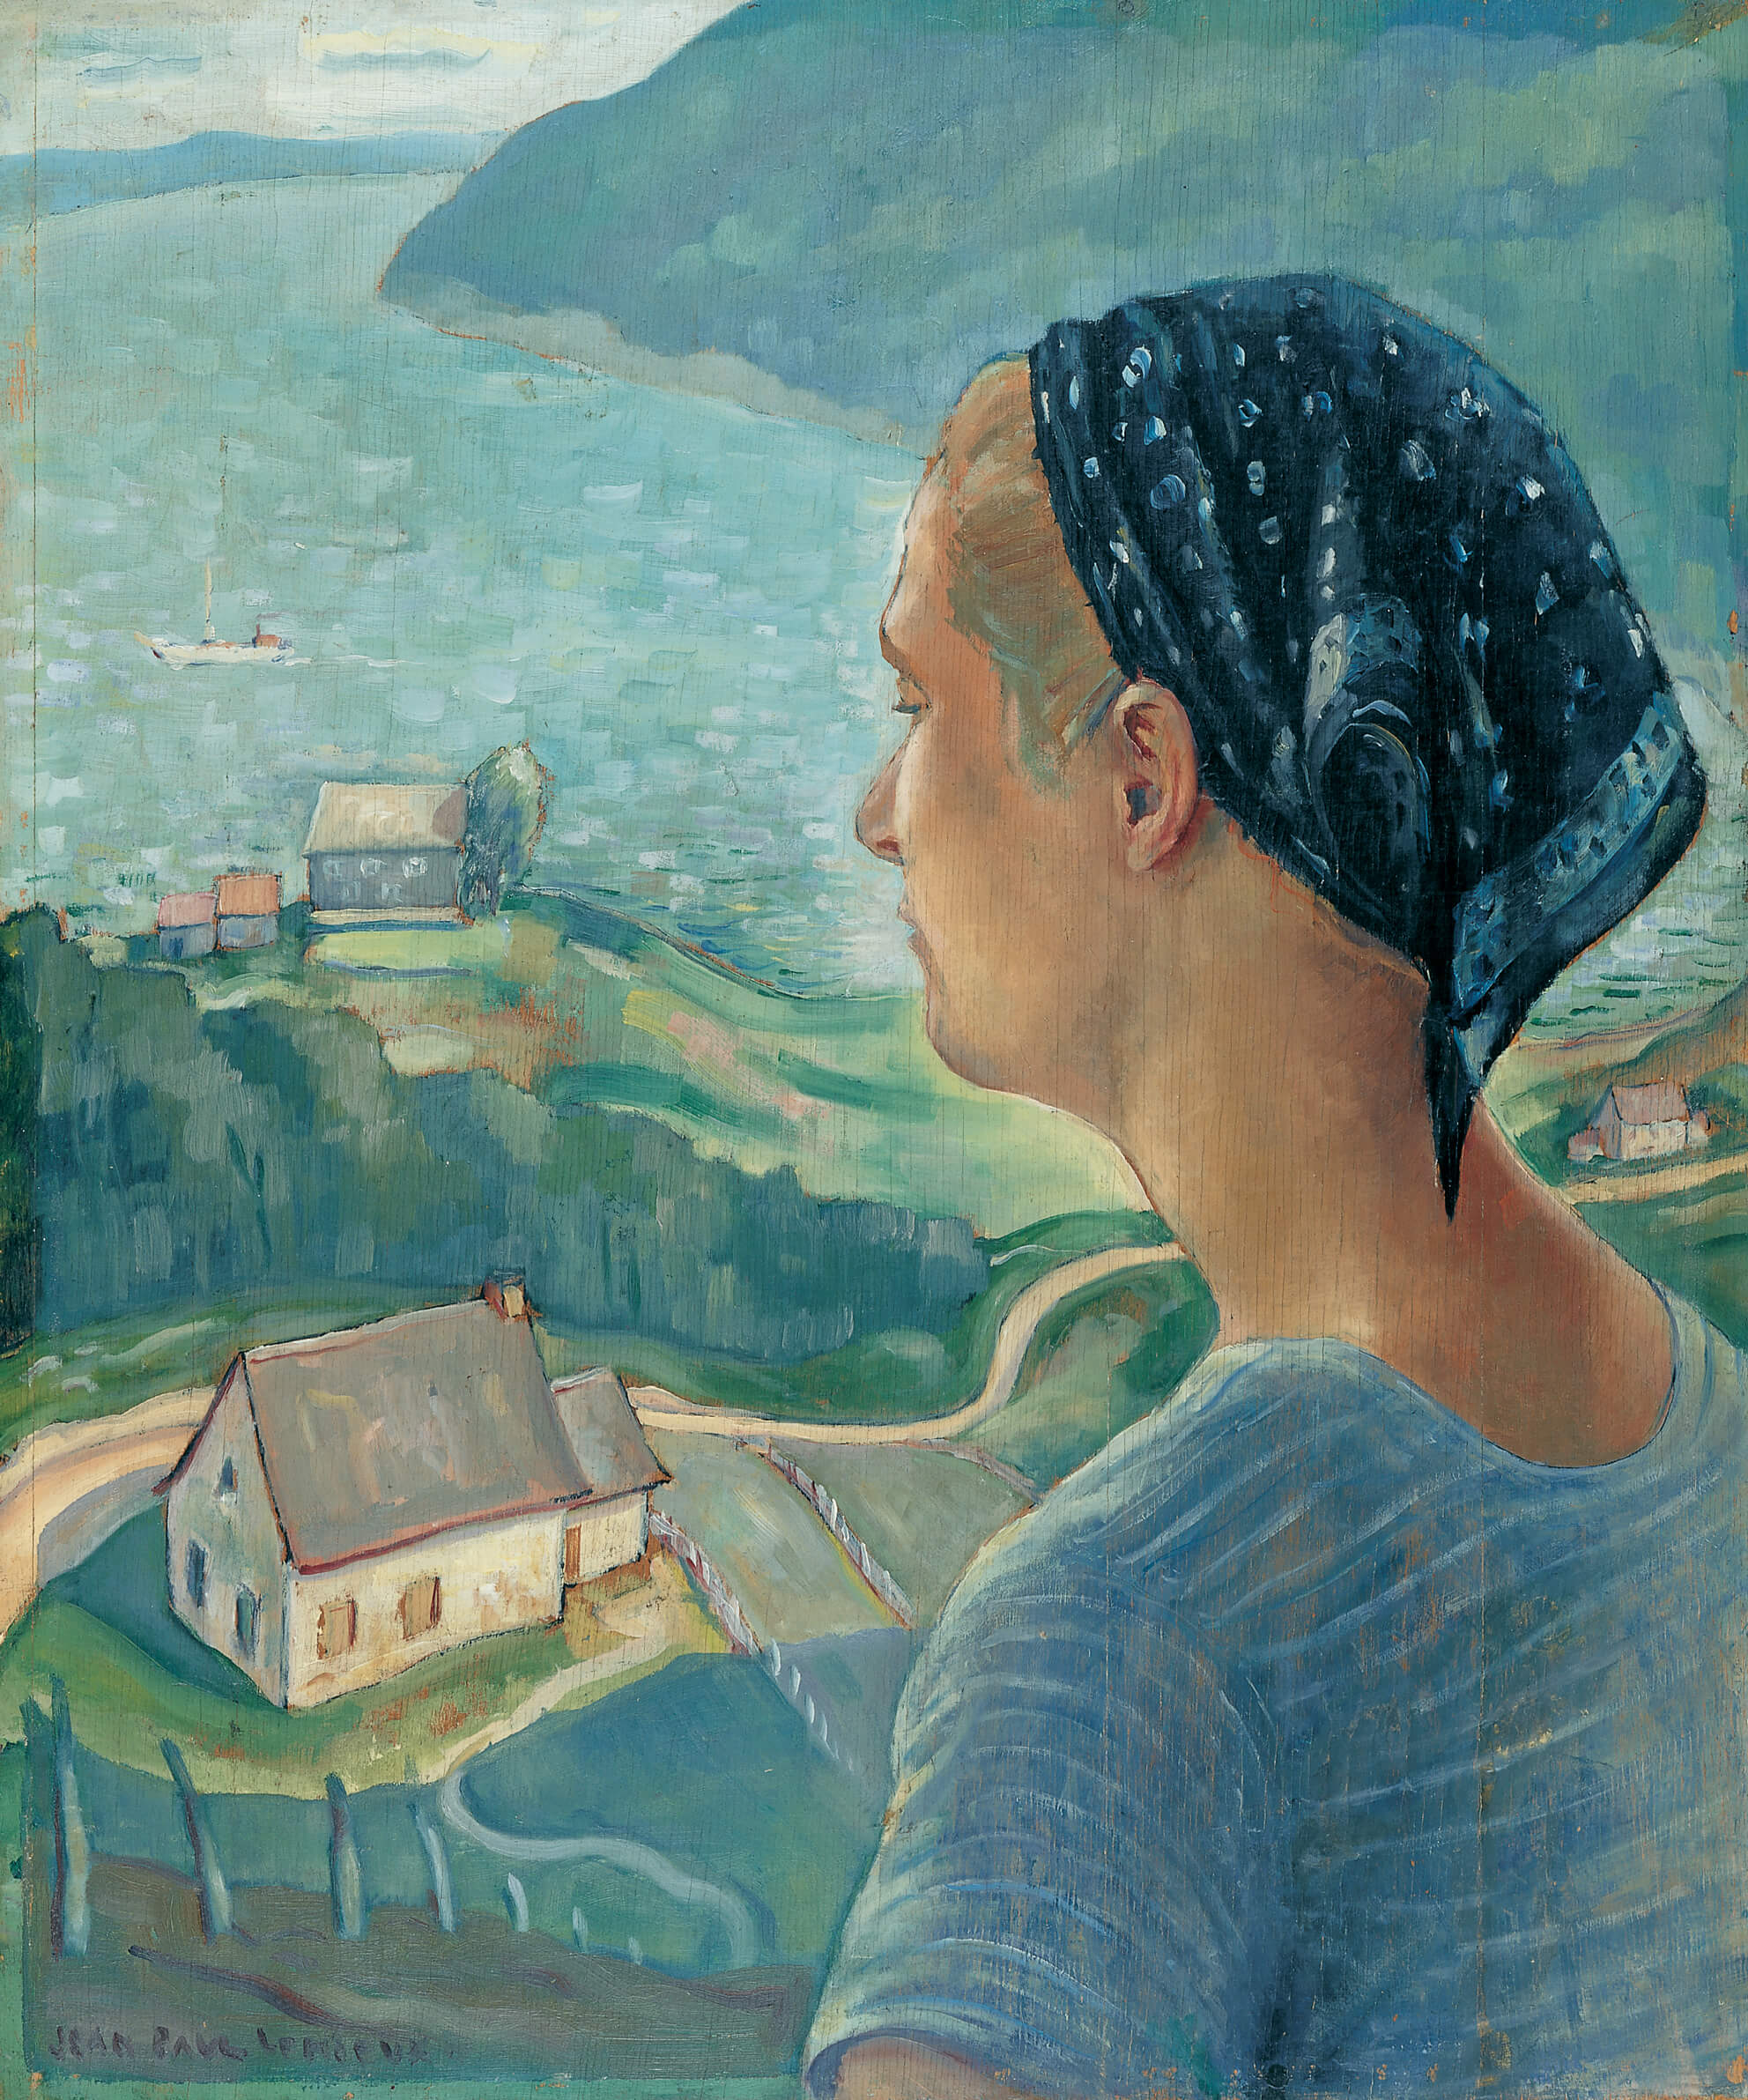  Jean Paul Lemieux, Les beaux jours, 1937